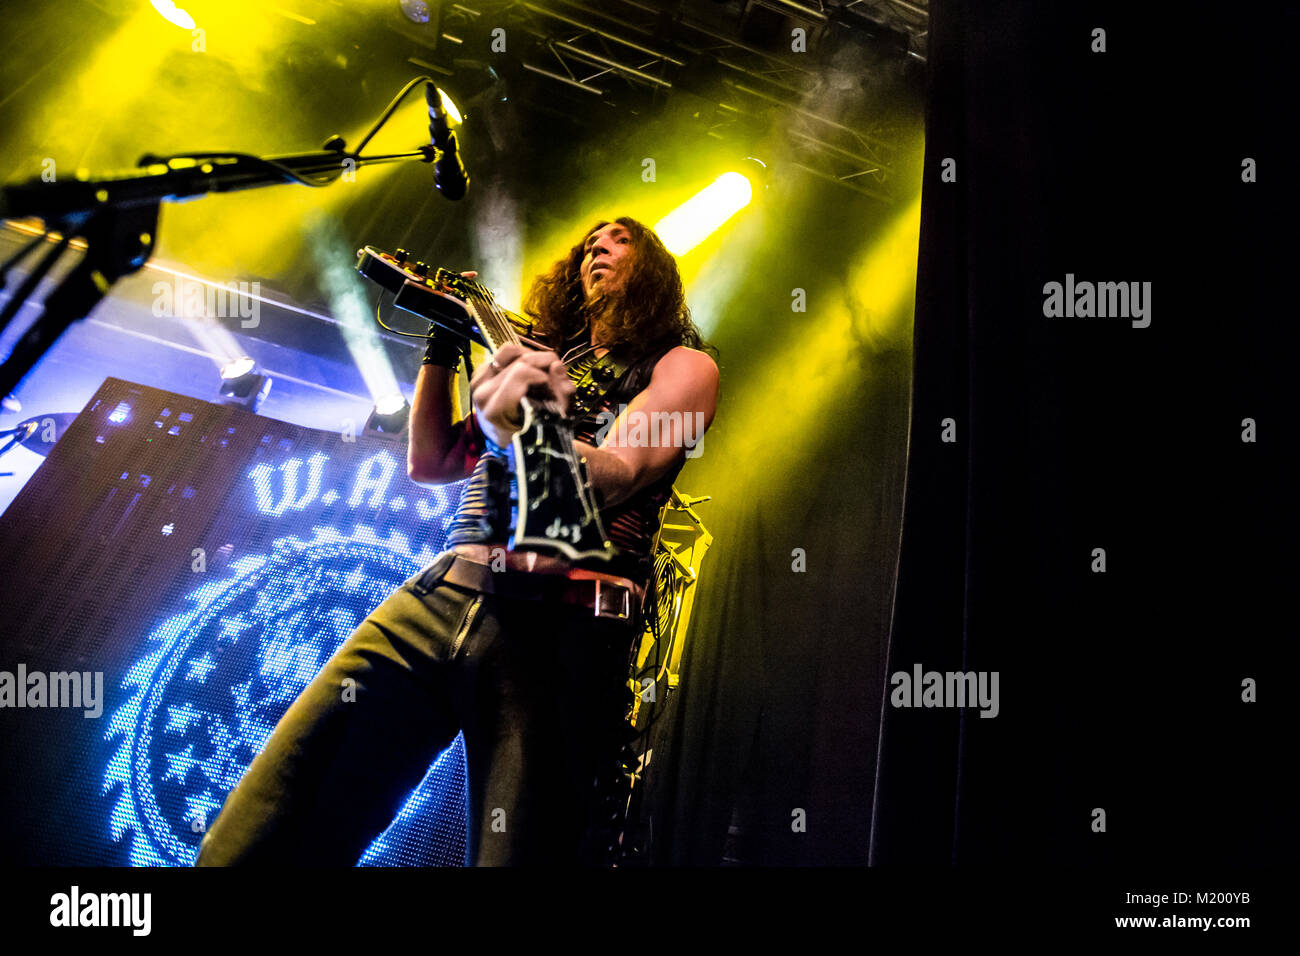 Le Glam metal américain W.A.S.P. bande effectue un concert live à Ricks à Bergen. Musicien ici Doug Blair à la guitare est vu sur scène. La Norvège, 15/10 2015. Banque D'Images